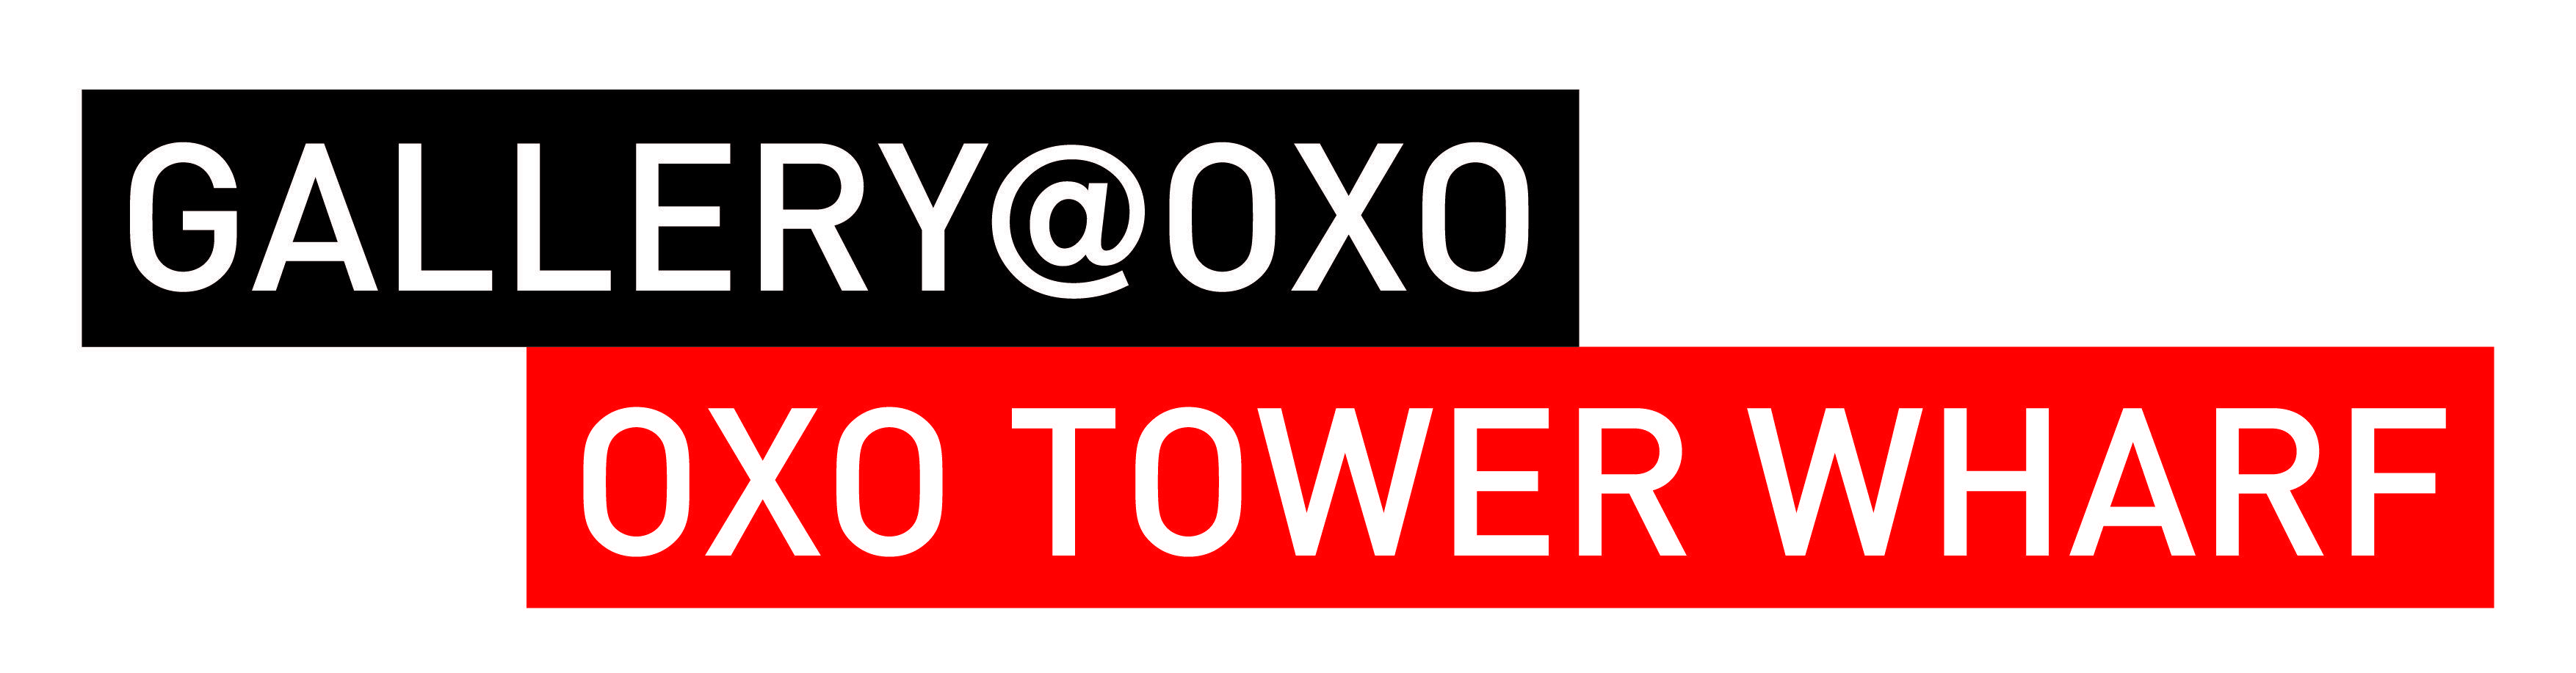 OXO Logo - gallery oxo logo